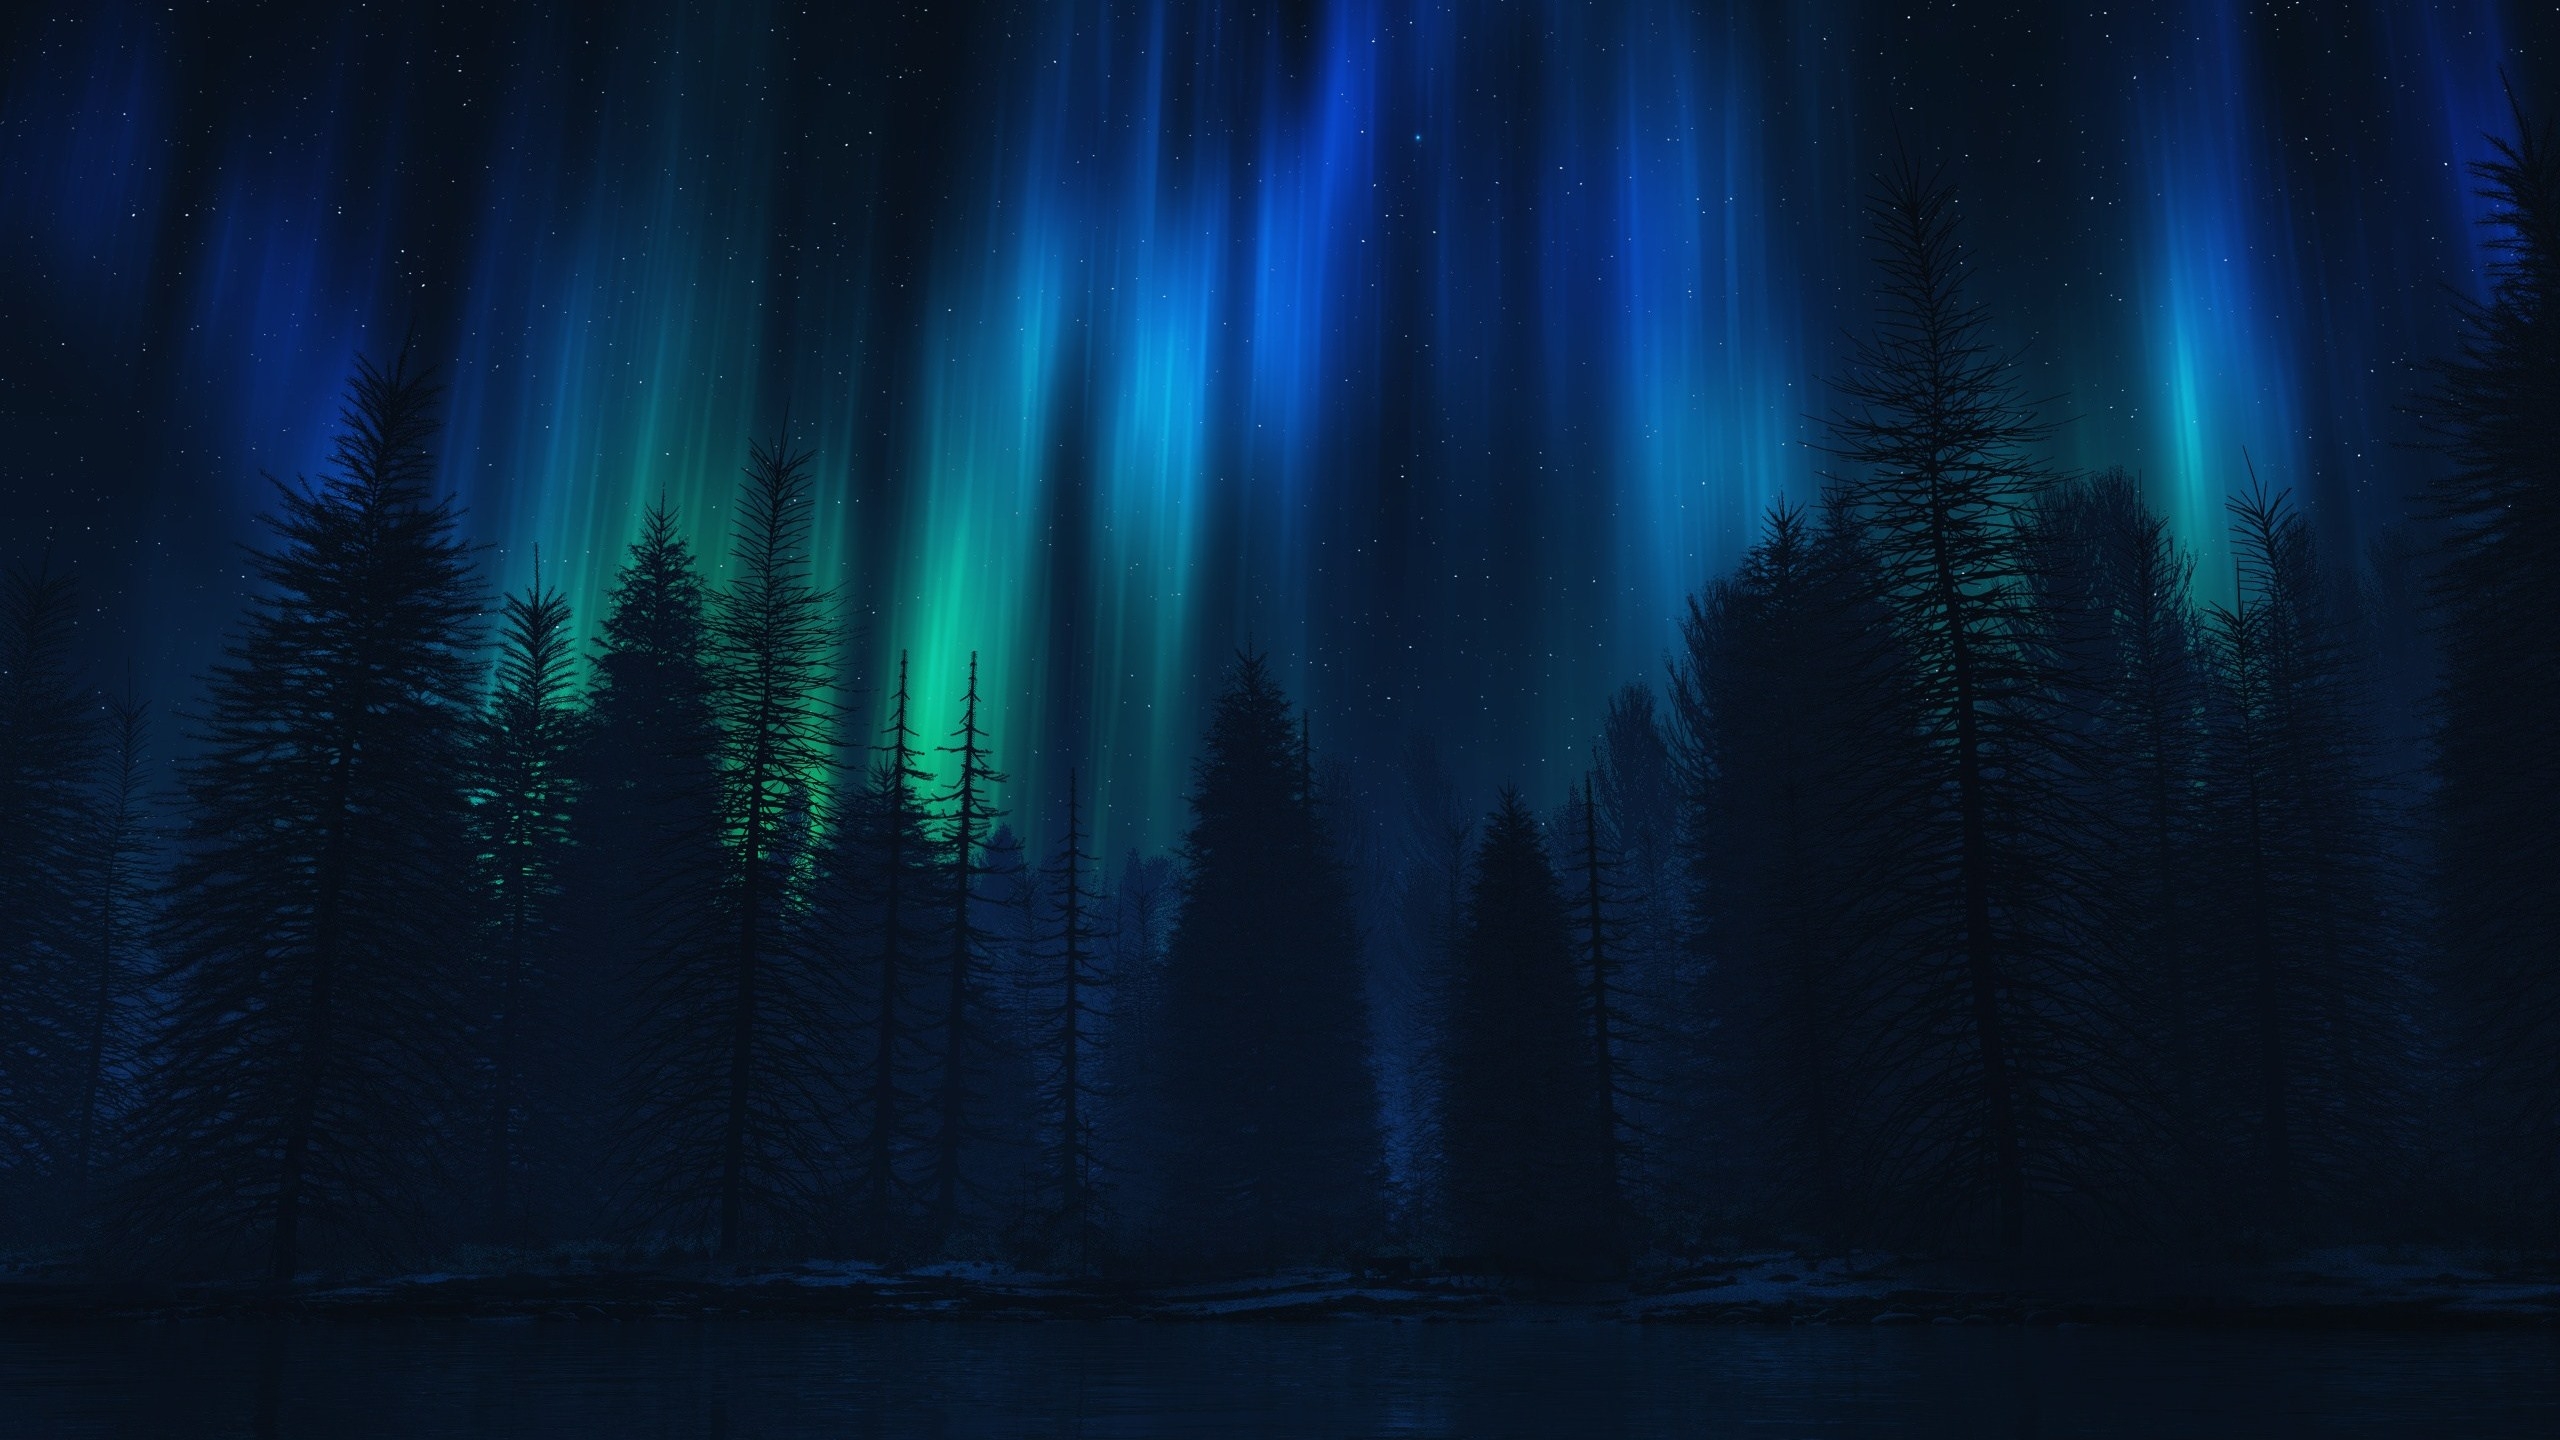 免费照片壁纸 森林中的北极光